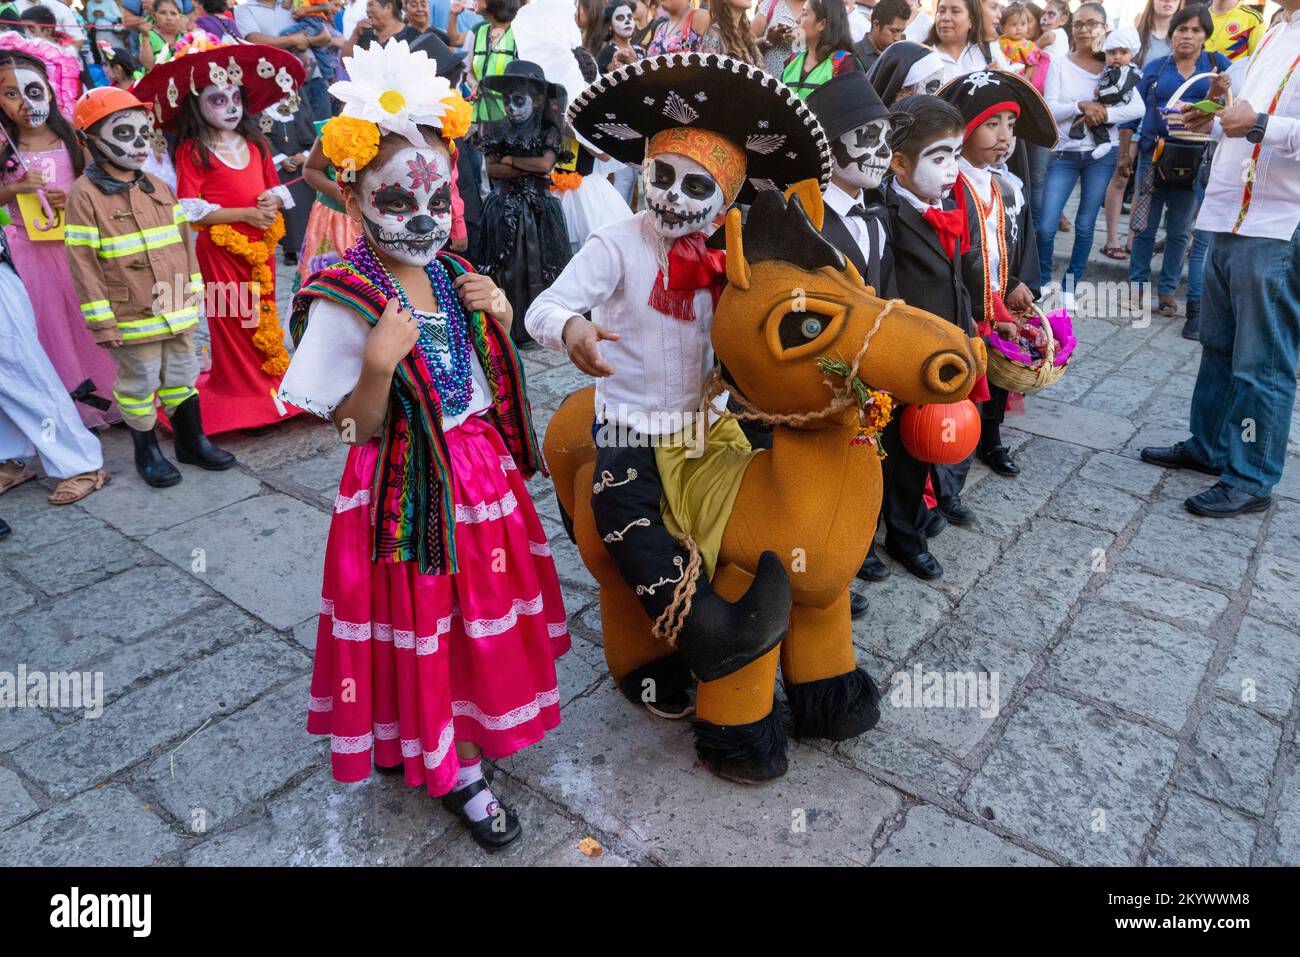 Les enfants déguisés et peints pour le visage s'alignent pour un défilé des enfants du jour des morts dans une rue à Oaxaca, au Mexique. Banque D'Images